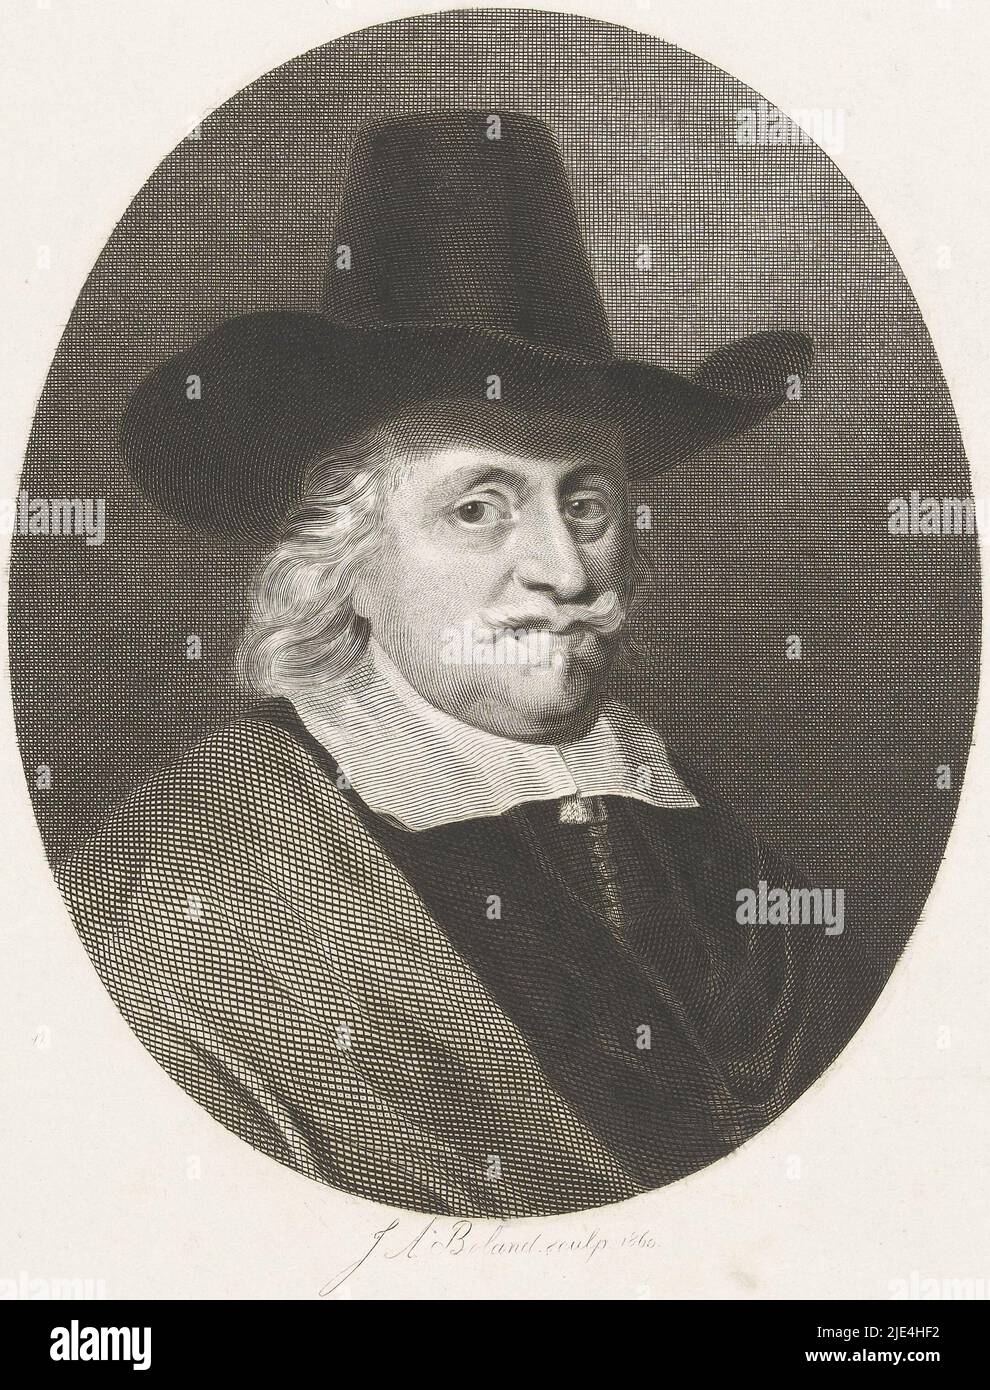 Retrato de un caballero con sombrero, Johannes Arnoldus Boland, después de anónimo, 1860, imprenta: Johannes Arnoldus Boland, (firmado por el artista), anónimo, Amsterdam, 15-Mar-1860, papel, grabado, al. 253 mm x al. 198 mm Foto de stock